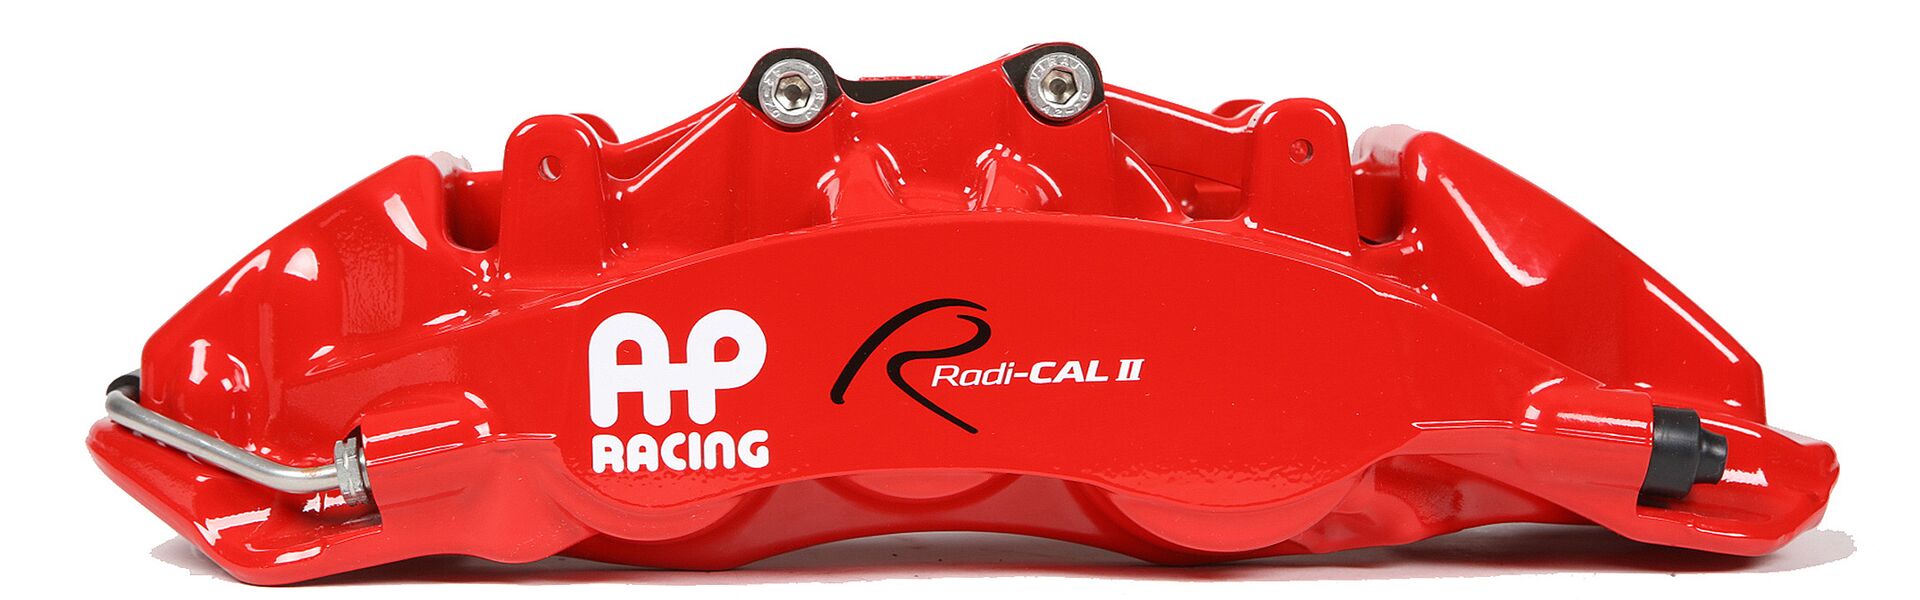 Sada přední AP Racing pro Tuning/Trackday - kompletní kit